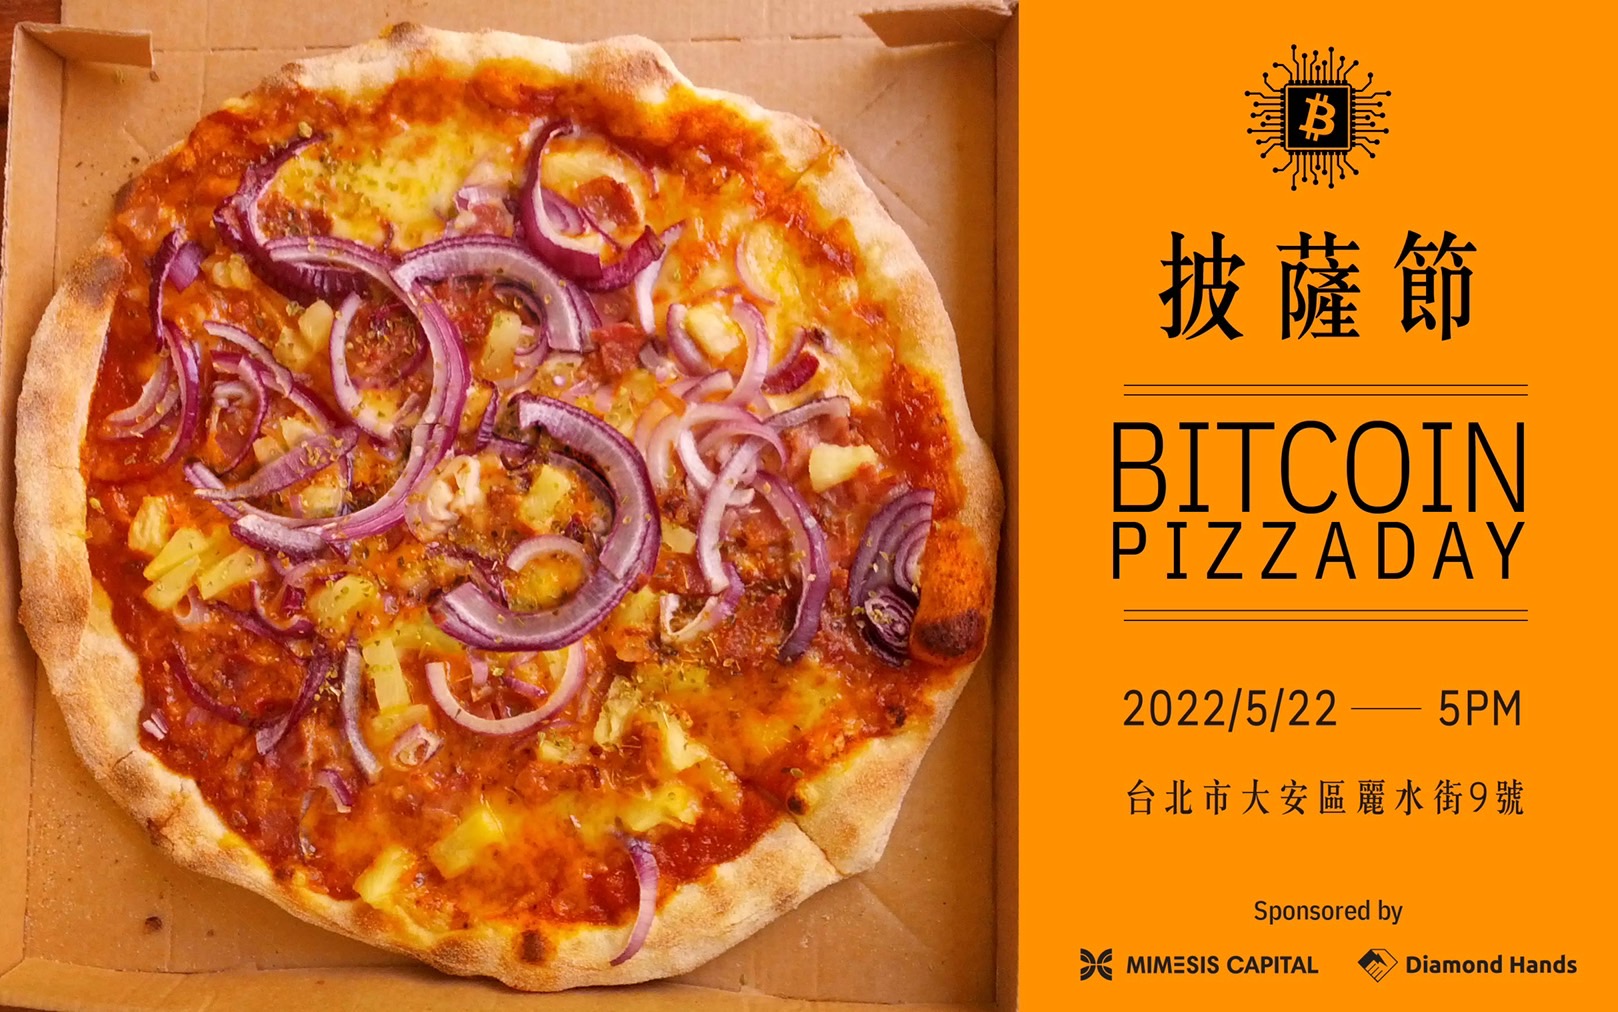 Join us at pizza day May 22, 2022 at 5:00pm